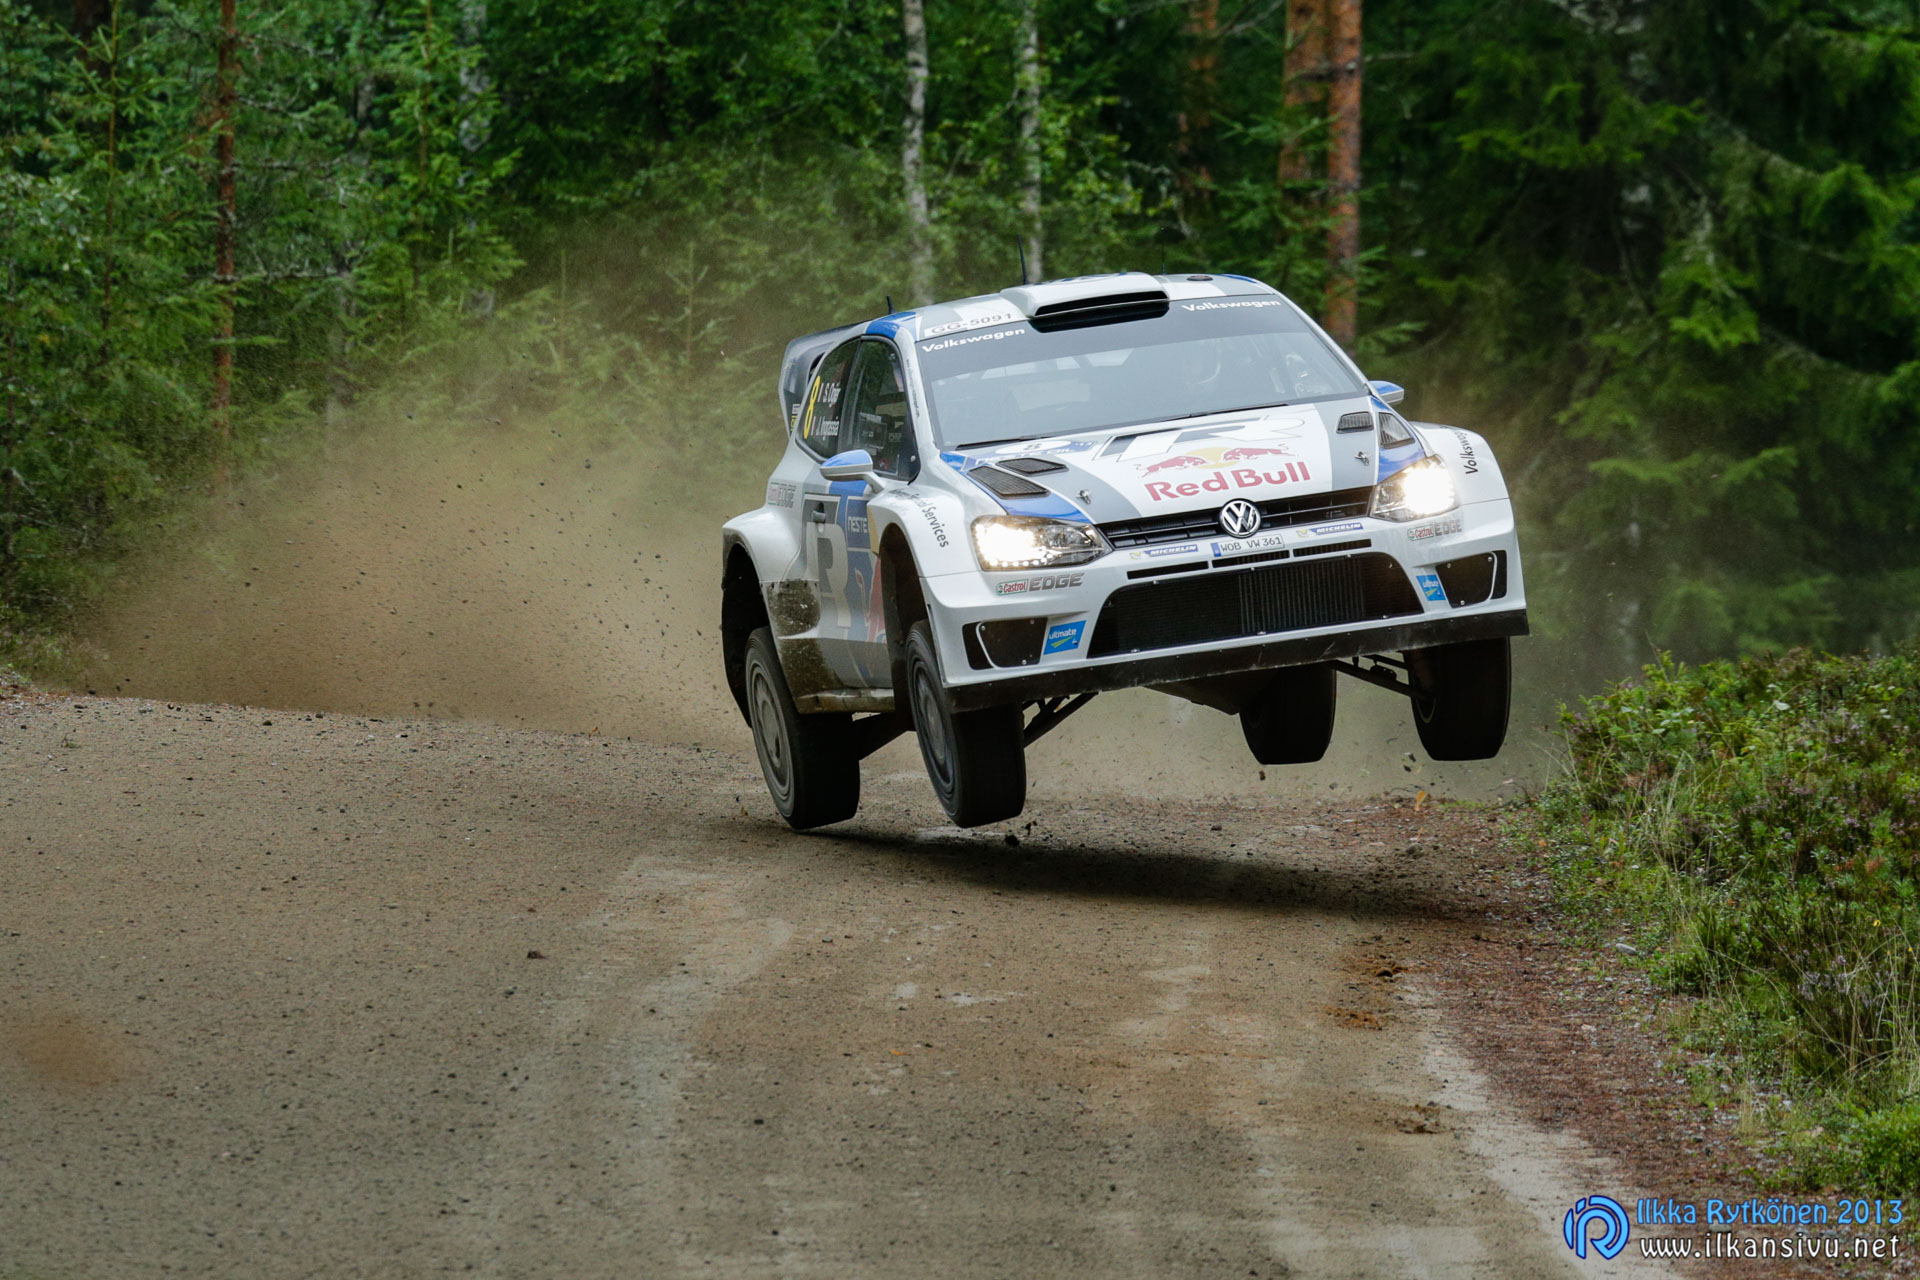 1/400 s, f/8, ISO 2000, 400 mm, EF100-400mm f/4.5-5.6L IS USM, Neste Oil Rally Finland 2013, Sebastien Ogier